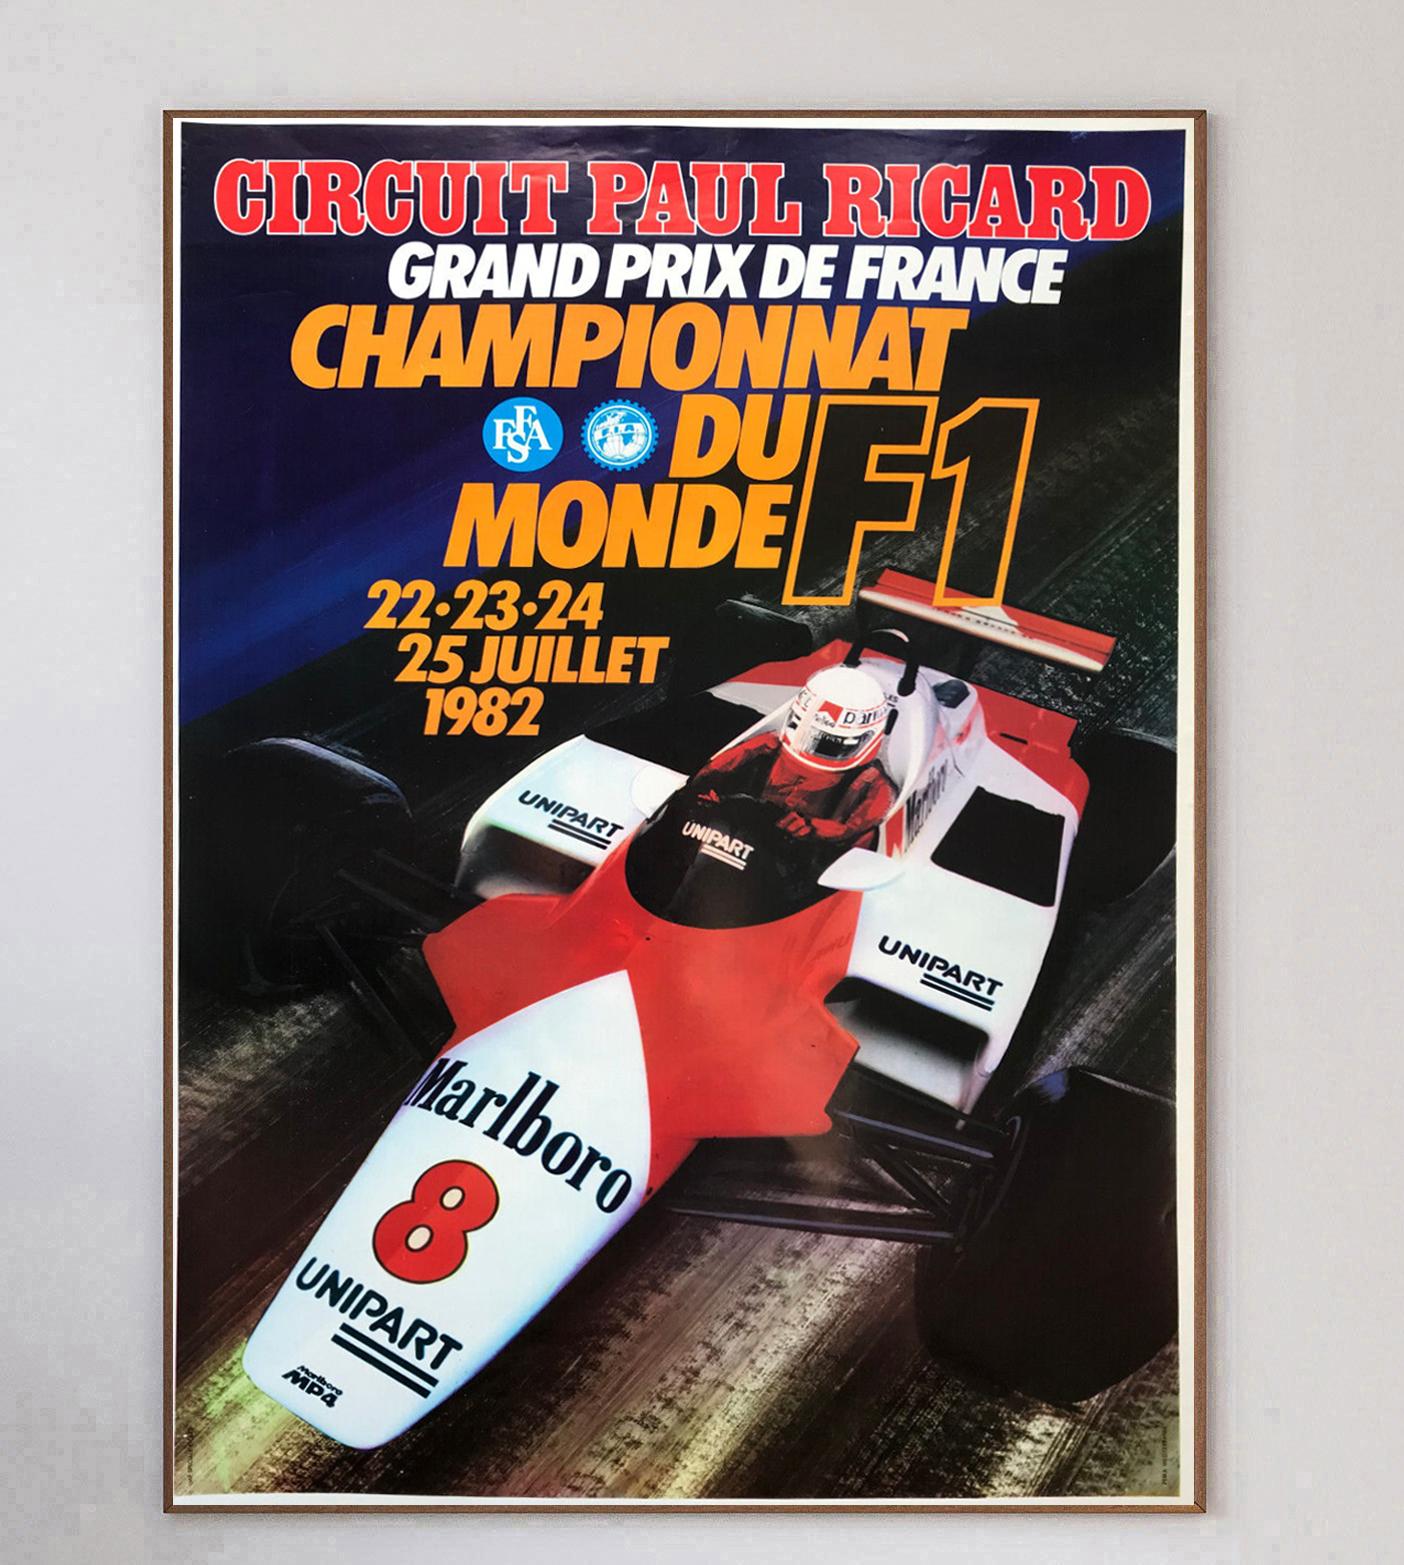 Este cartel corresponde al Gran Premio de Francia de Fórmula 1 de 1982, celebrado en el Circuito Paul Ricard. 

El maravilloso diseño muestra al legendario Niki Lauda conduciendo el McLaren, mientras que René Arnoux ganó la carrera conduciendo para